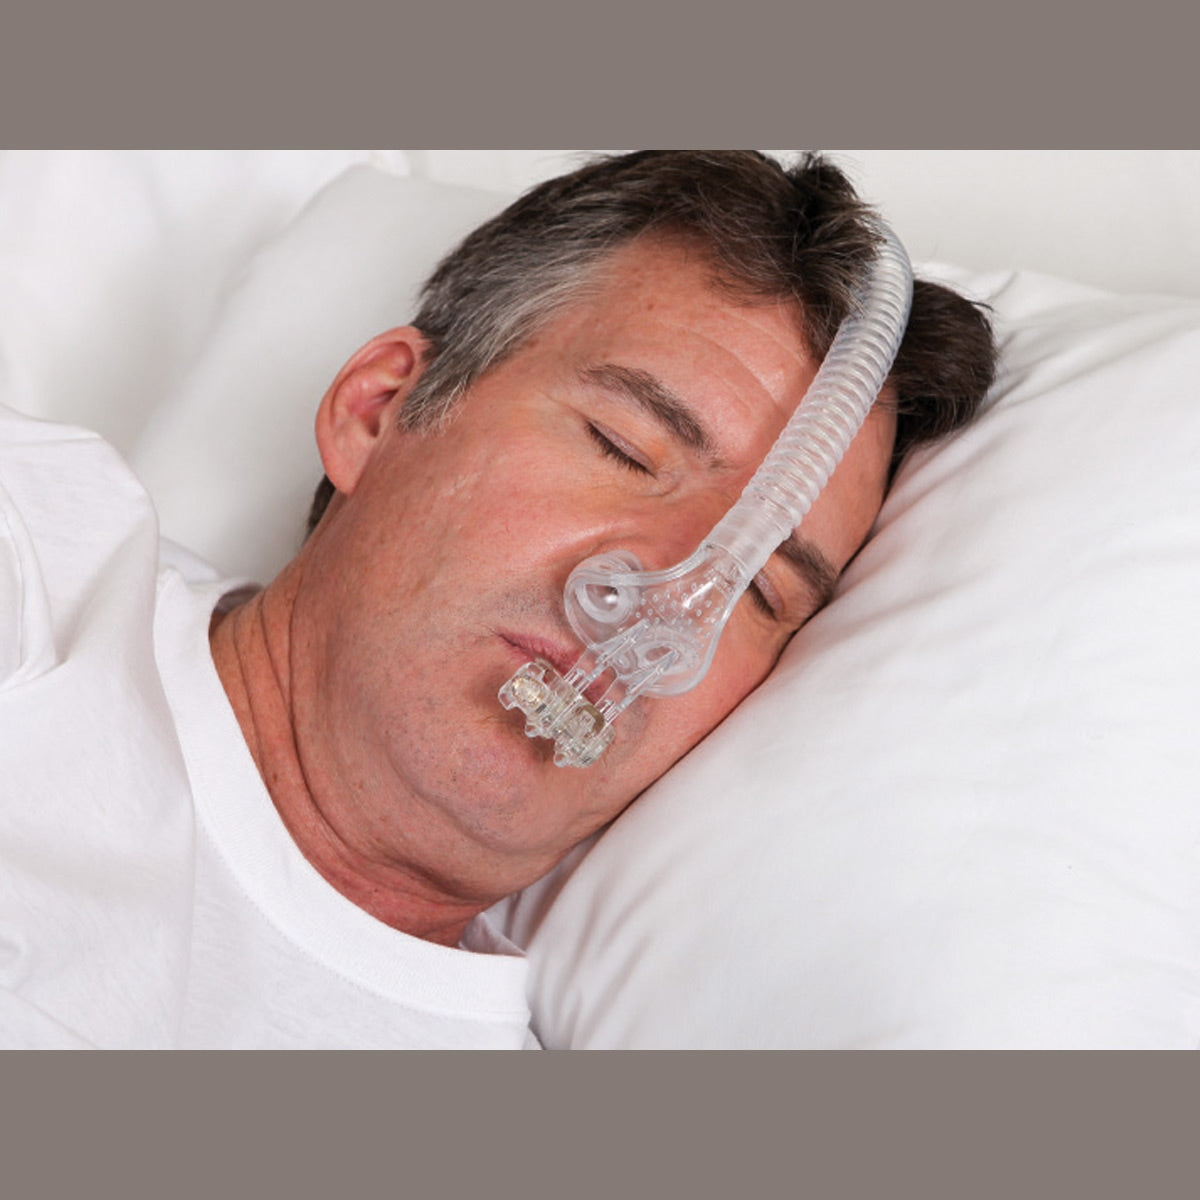 TAP PAP Nasal Pillow CPAP/BiPAP Mask Setup Pack — CPAPXchange